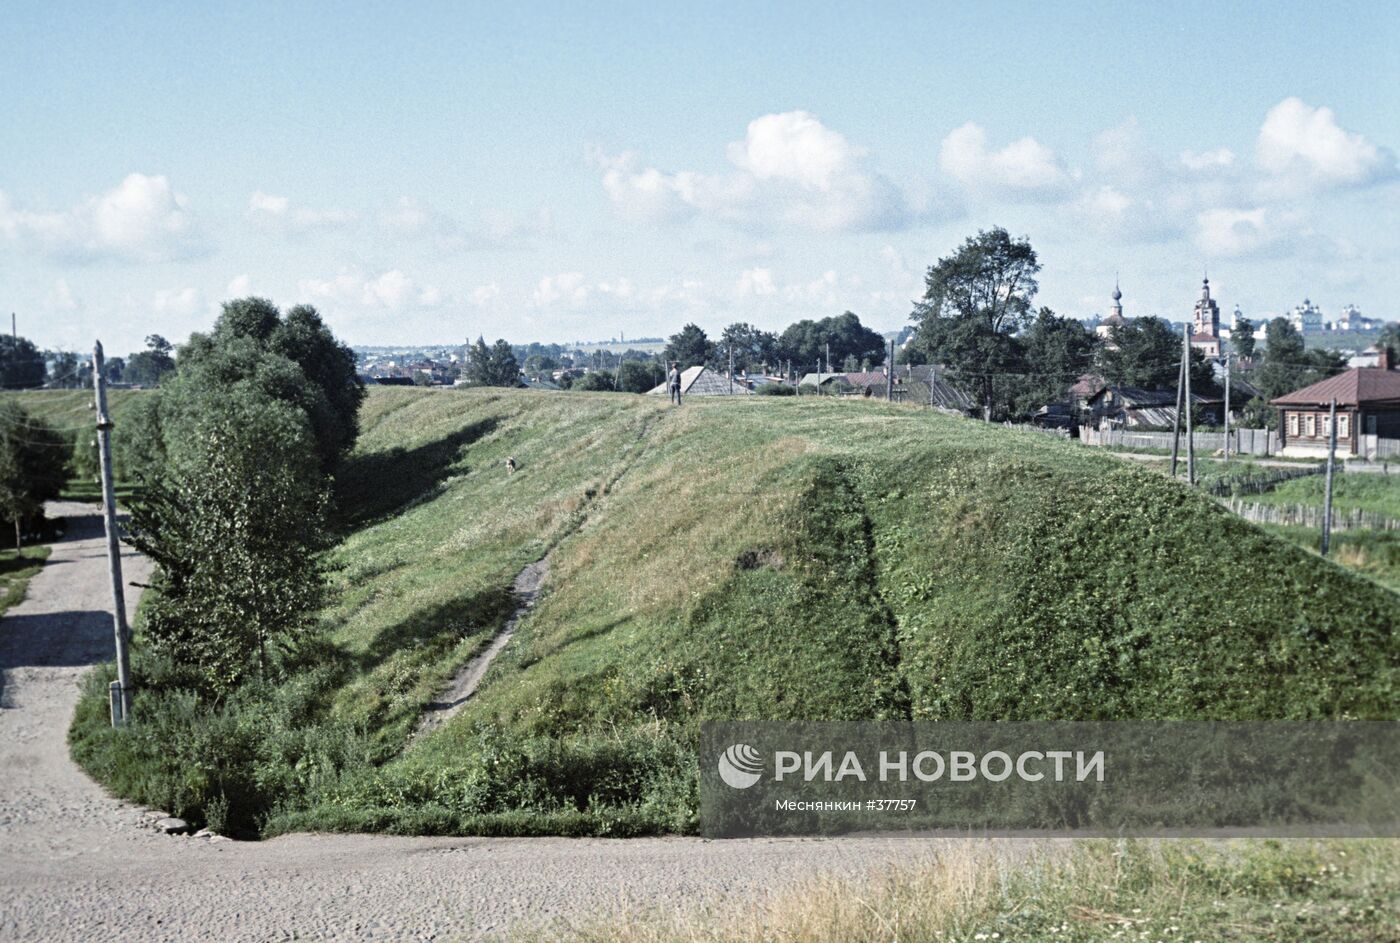 Остатки оборонительных сооружений XII века в городе Переславль-Залесский